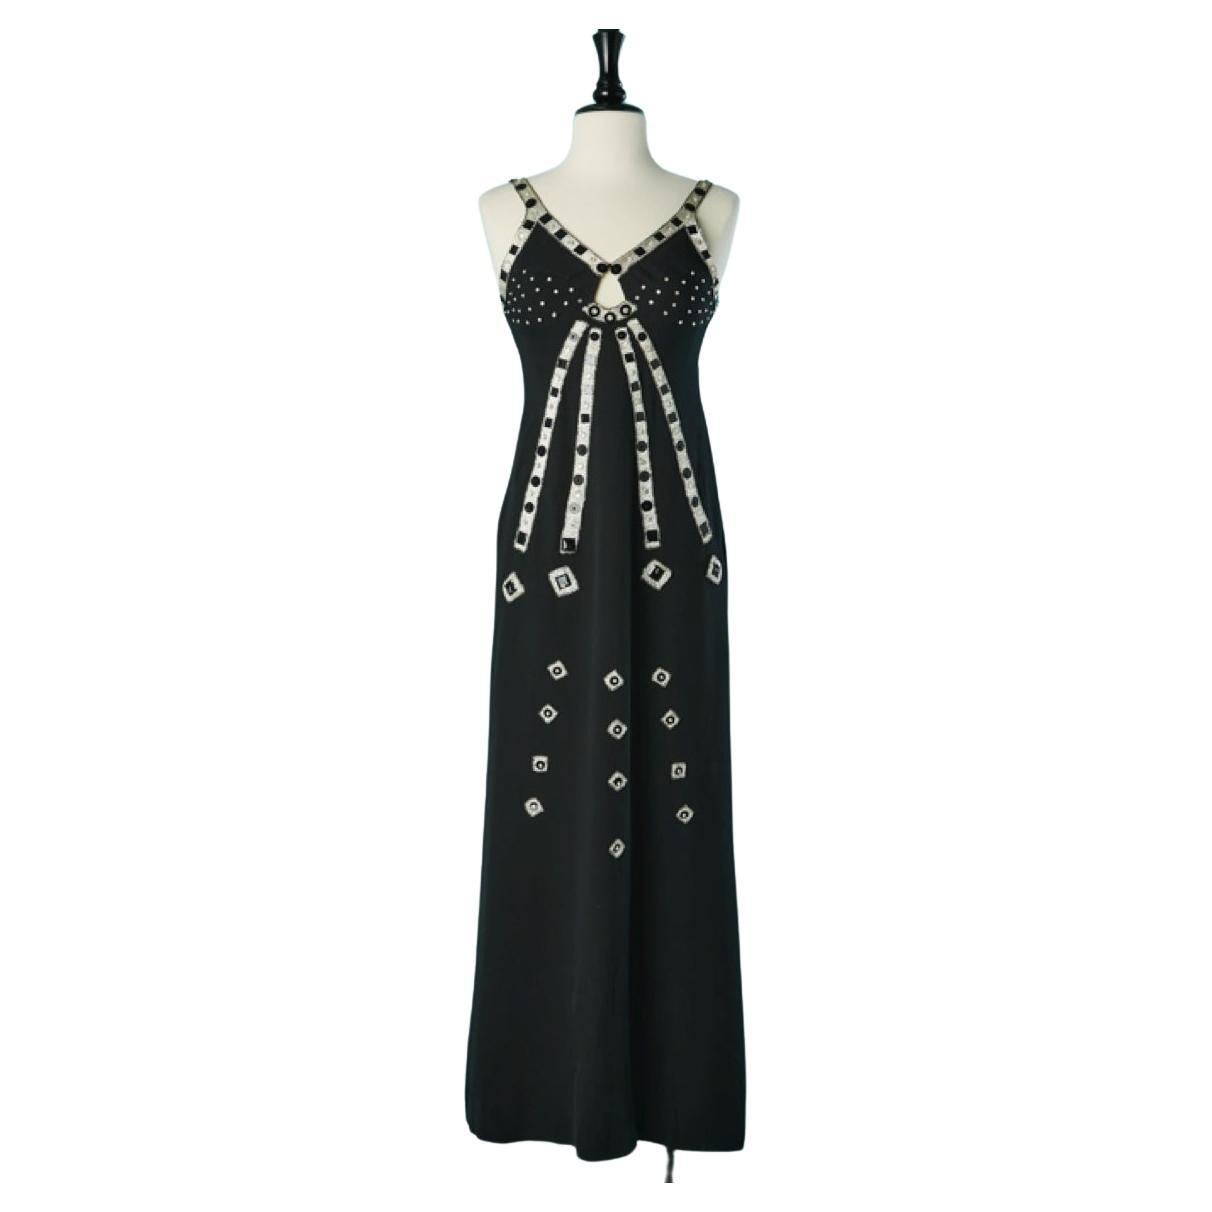 Circa 1952 Pierre Balmain Demi Couture Lace Evening Gown with Train | Evening  gowns, Lace evening gowns, Vintage dresses